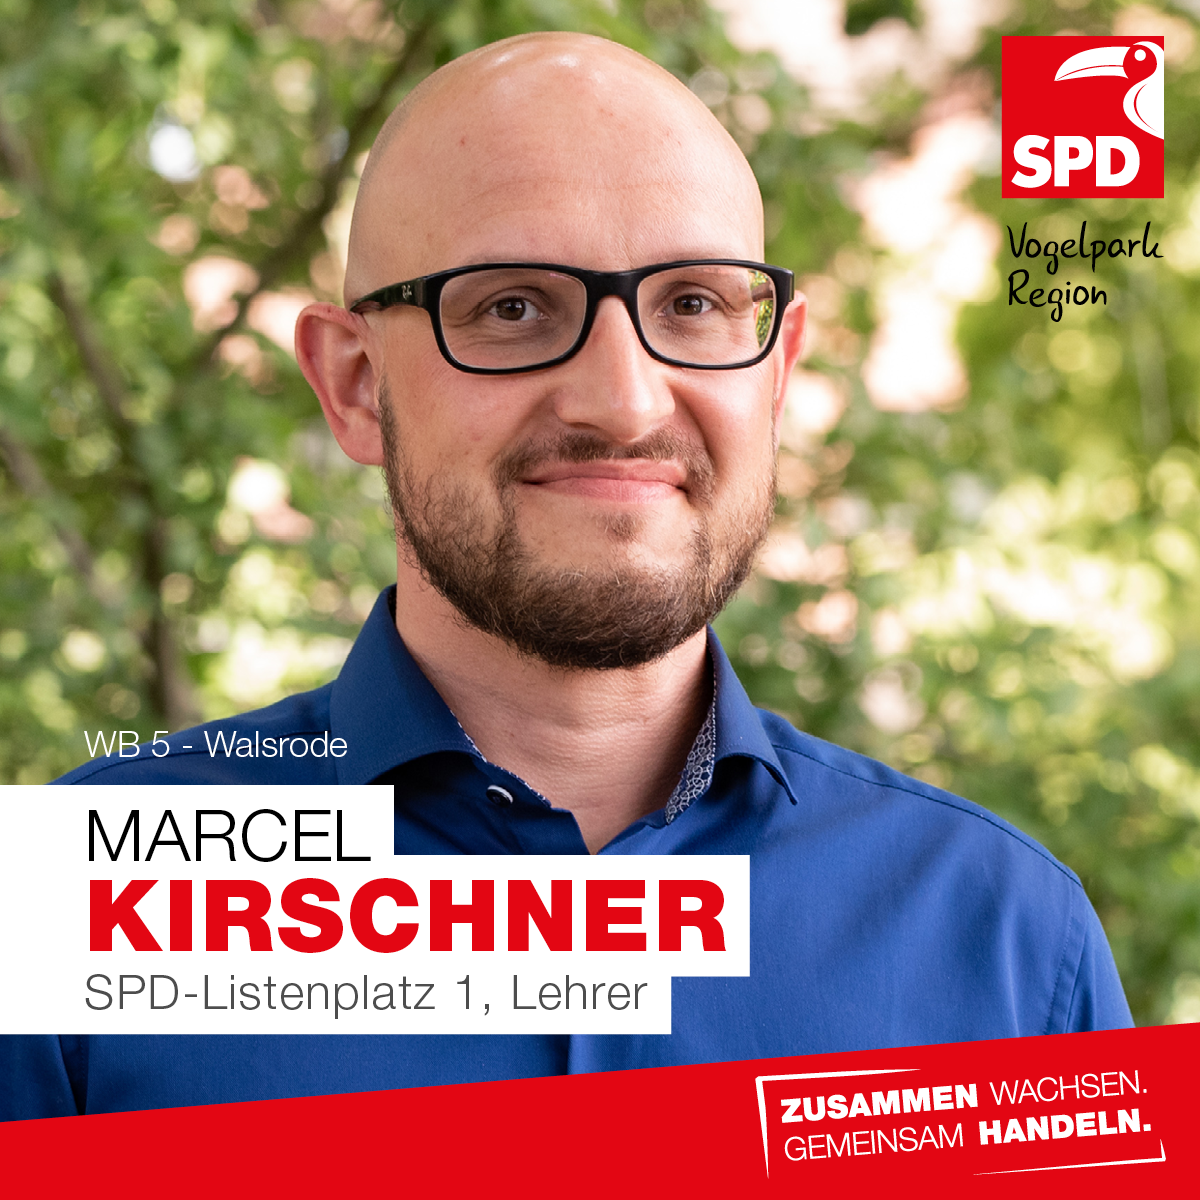 Marcel Kirschner